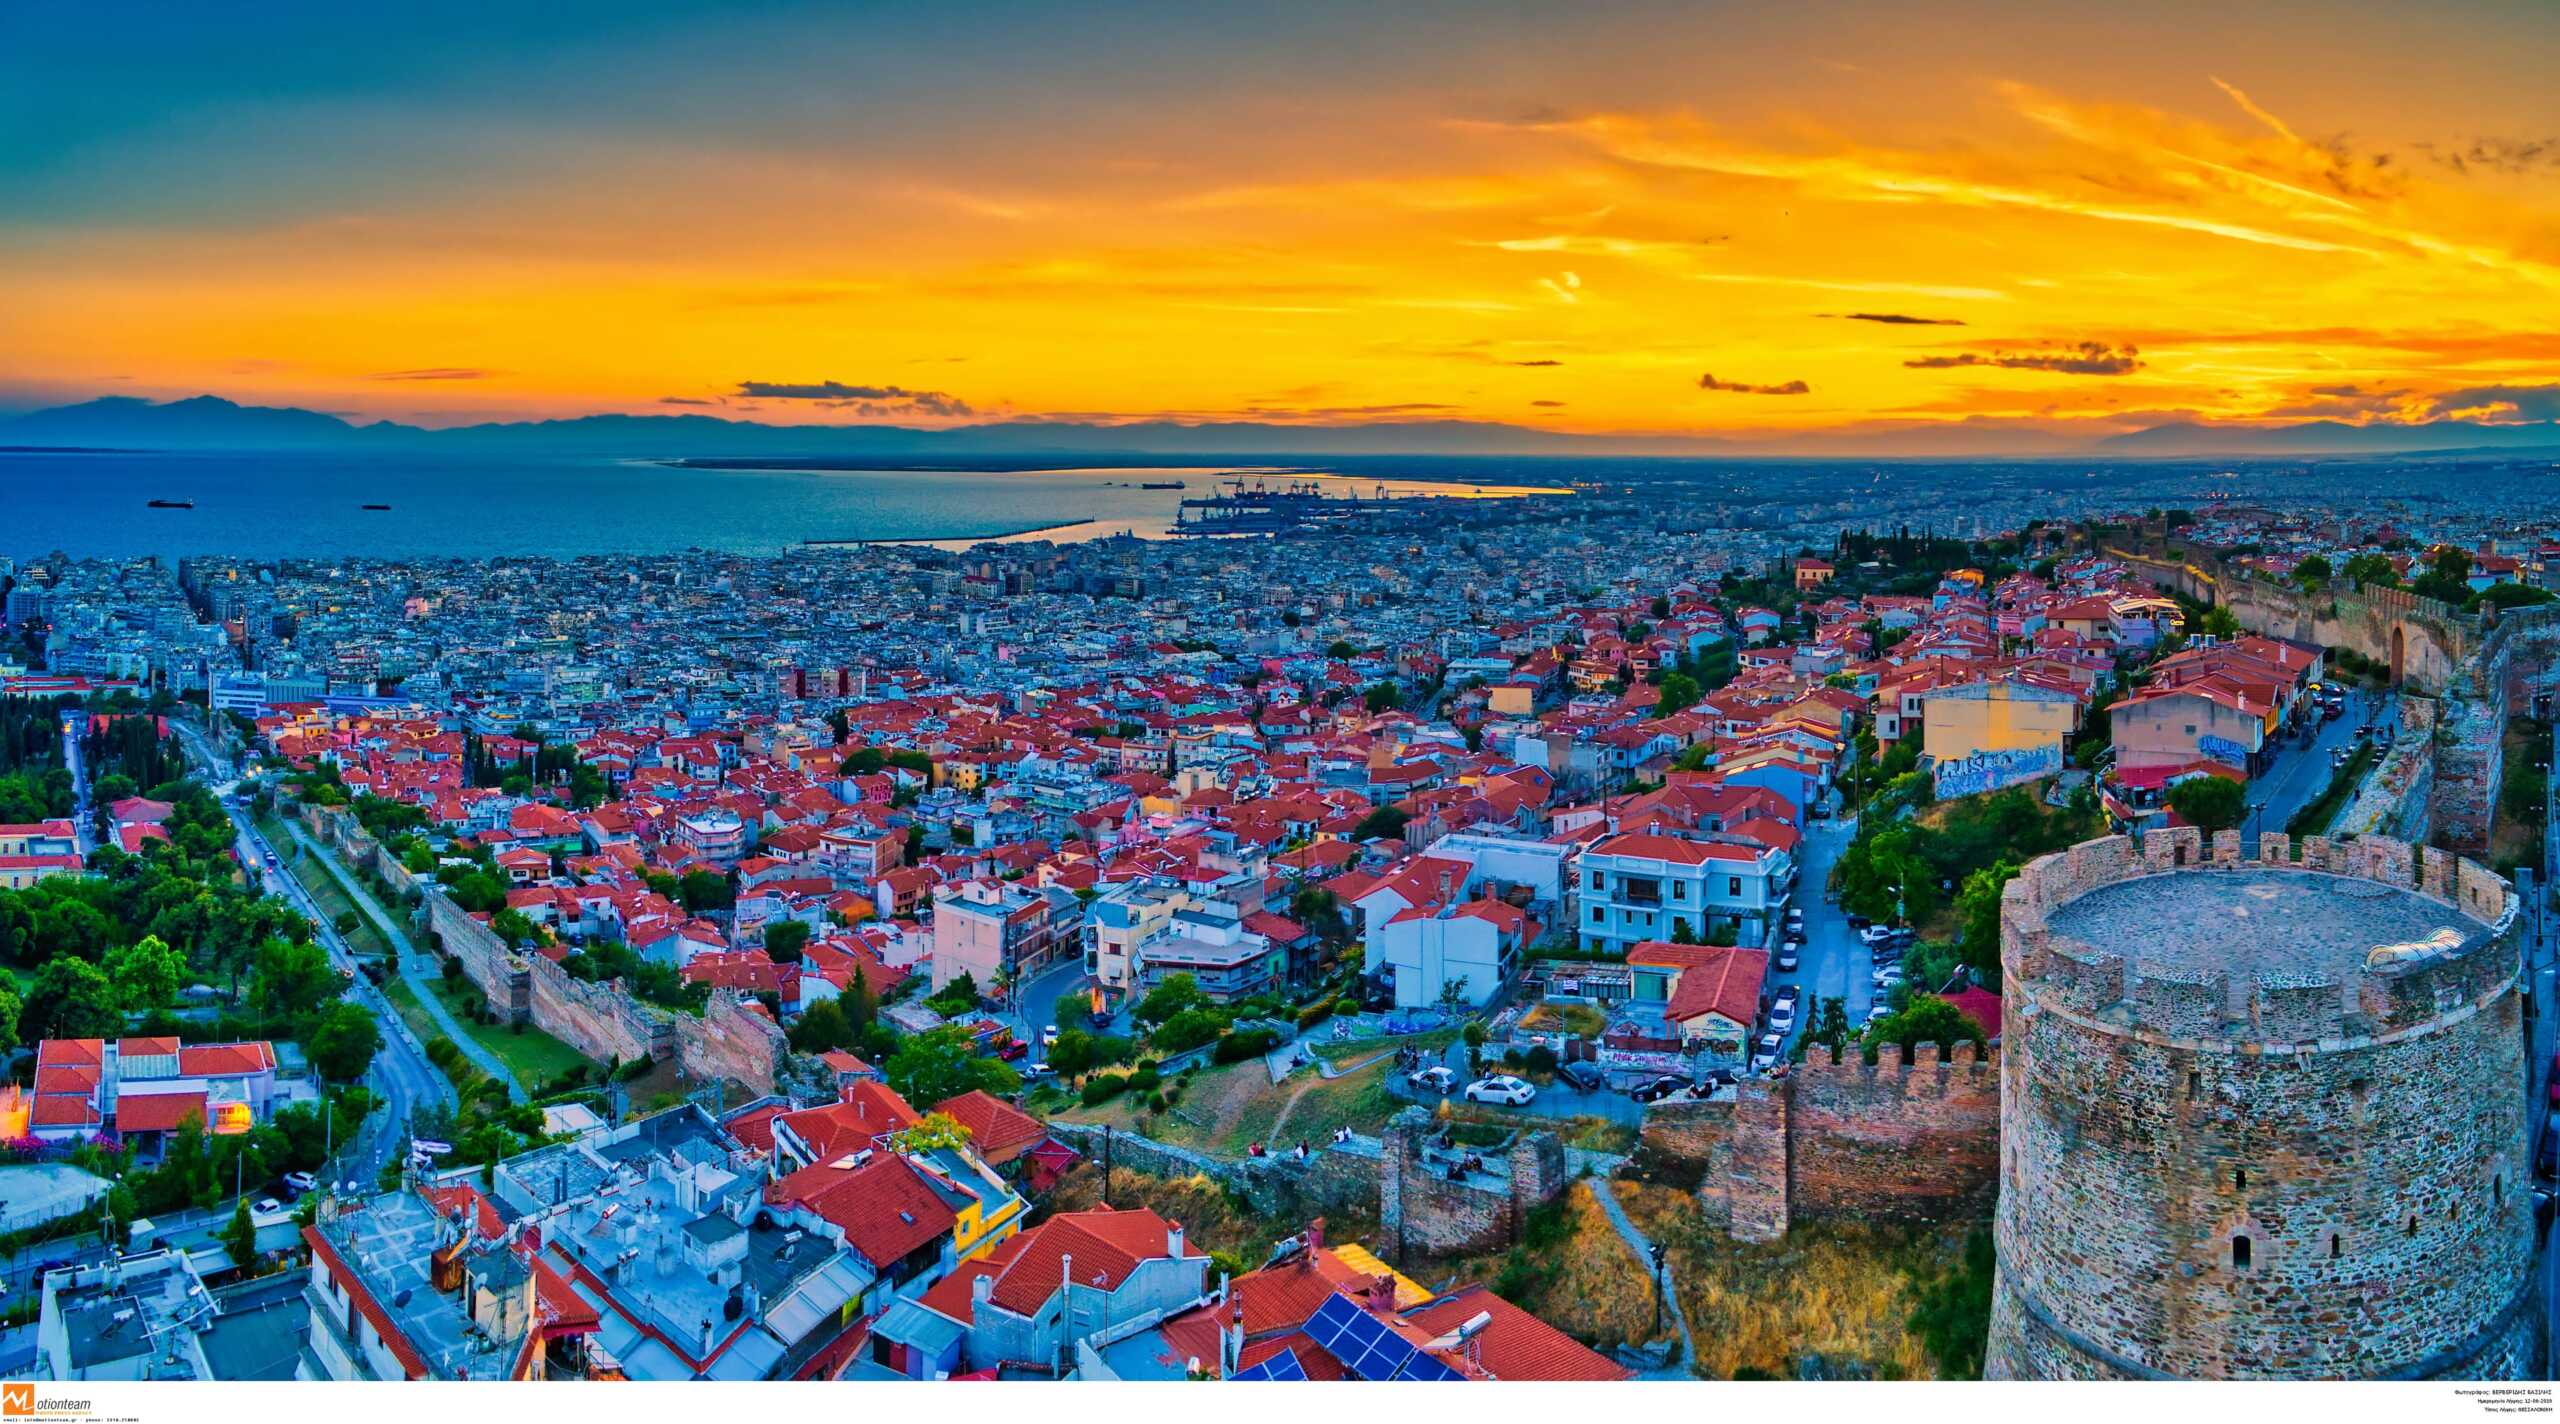 Θεσσαλονίκη: Η «πόλη των 15 λεπτών» σύμφωνα με έρευνα του ΑΠΘ